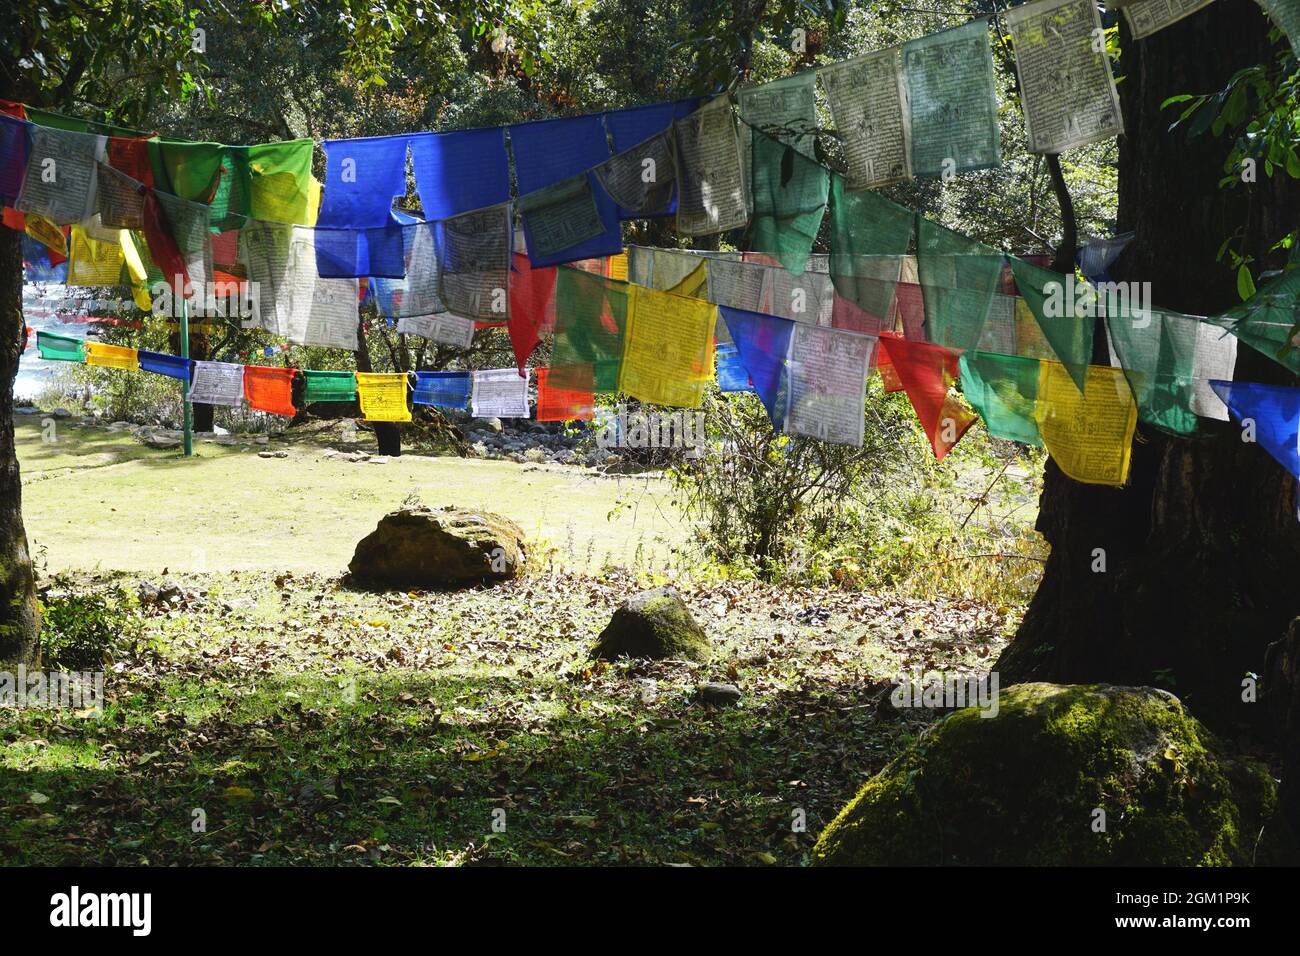 Bunte Gebetsfahnen hängen an den Bäumen in der Nähe einer sonnigen Lichtung an einem Fluss im ländlichen Bhutan. Legenden verfolgen den Ursprung der Gebetsfahne auf Buddha. Stockfoto